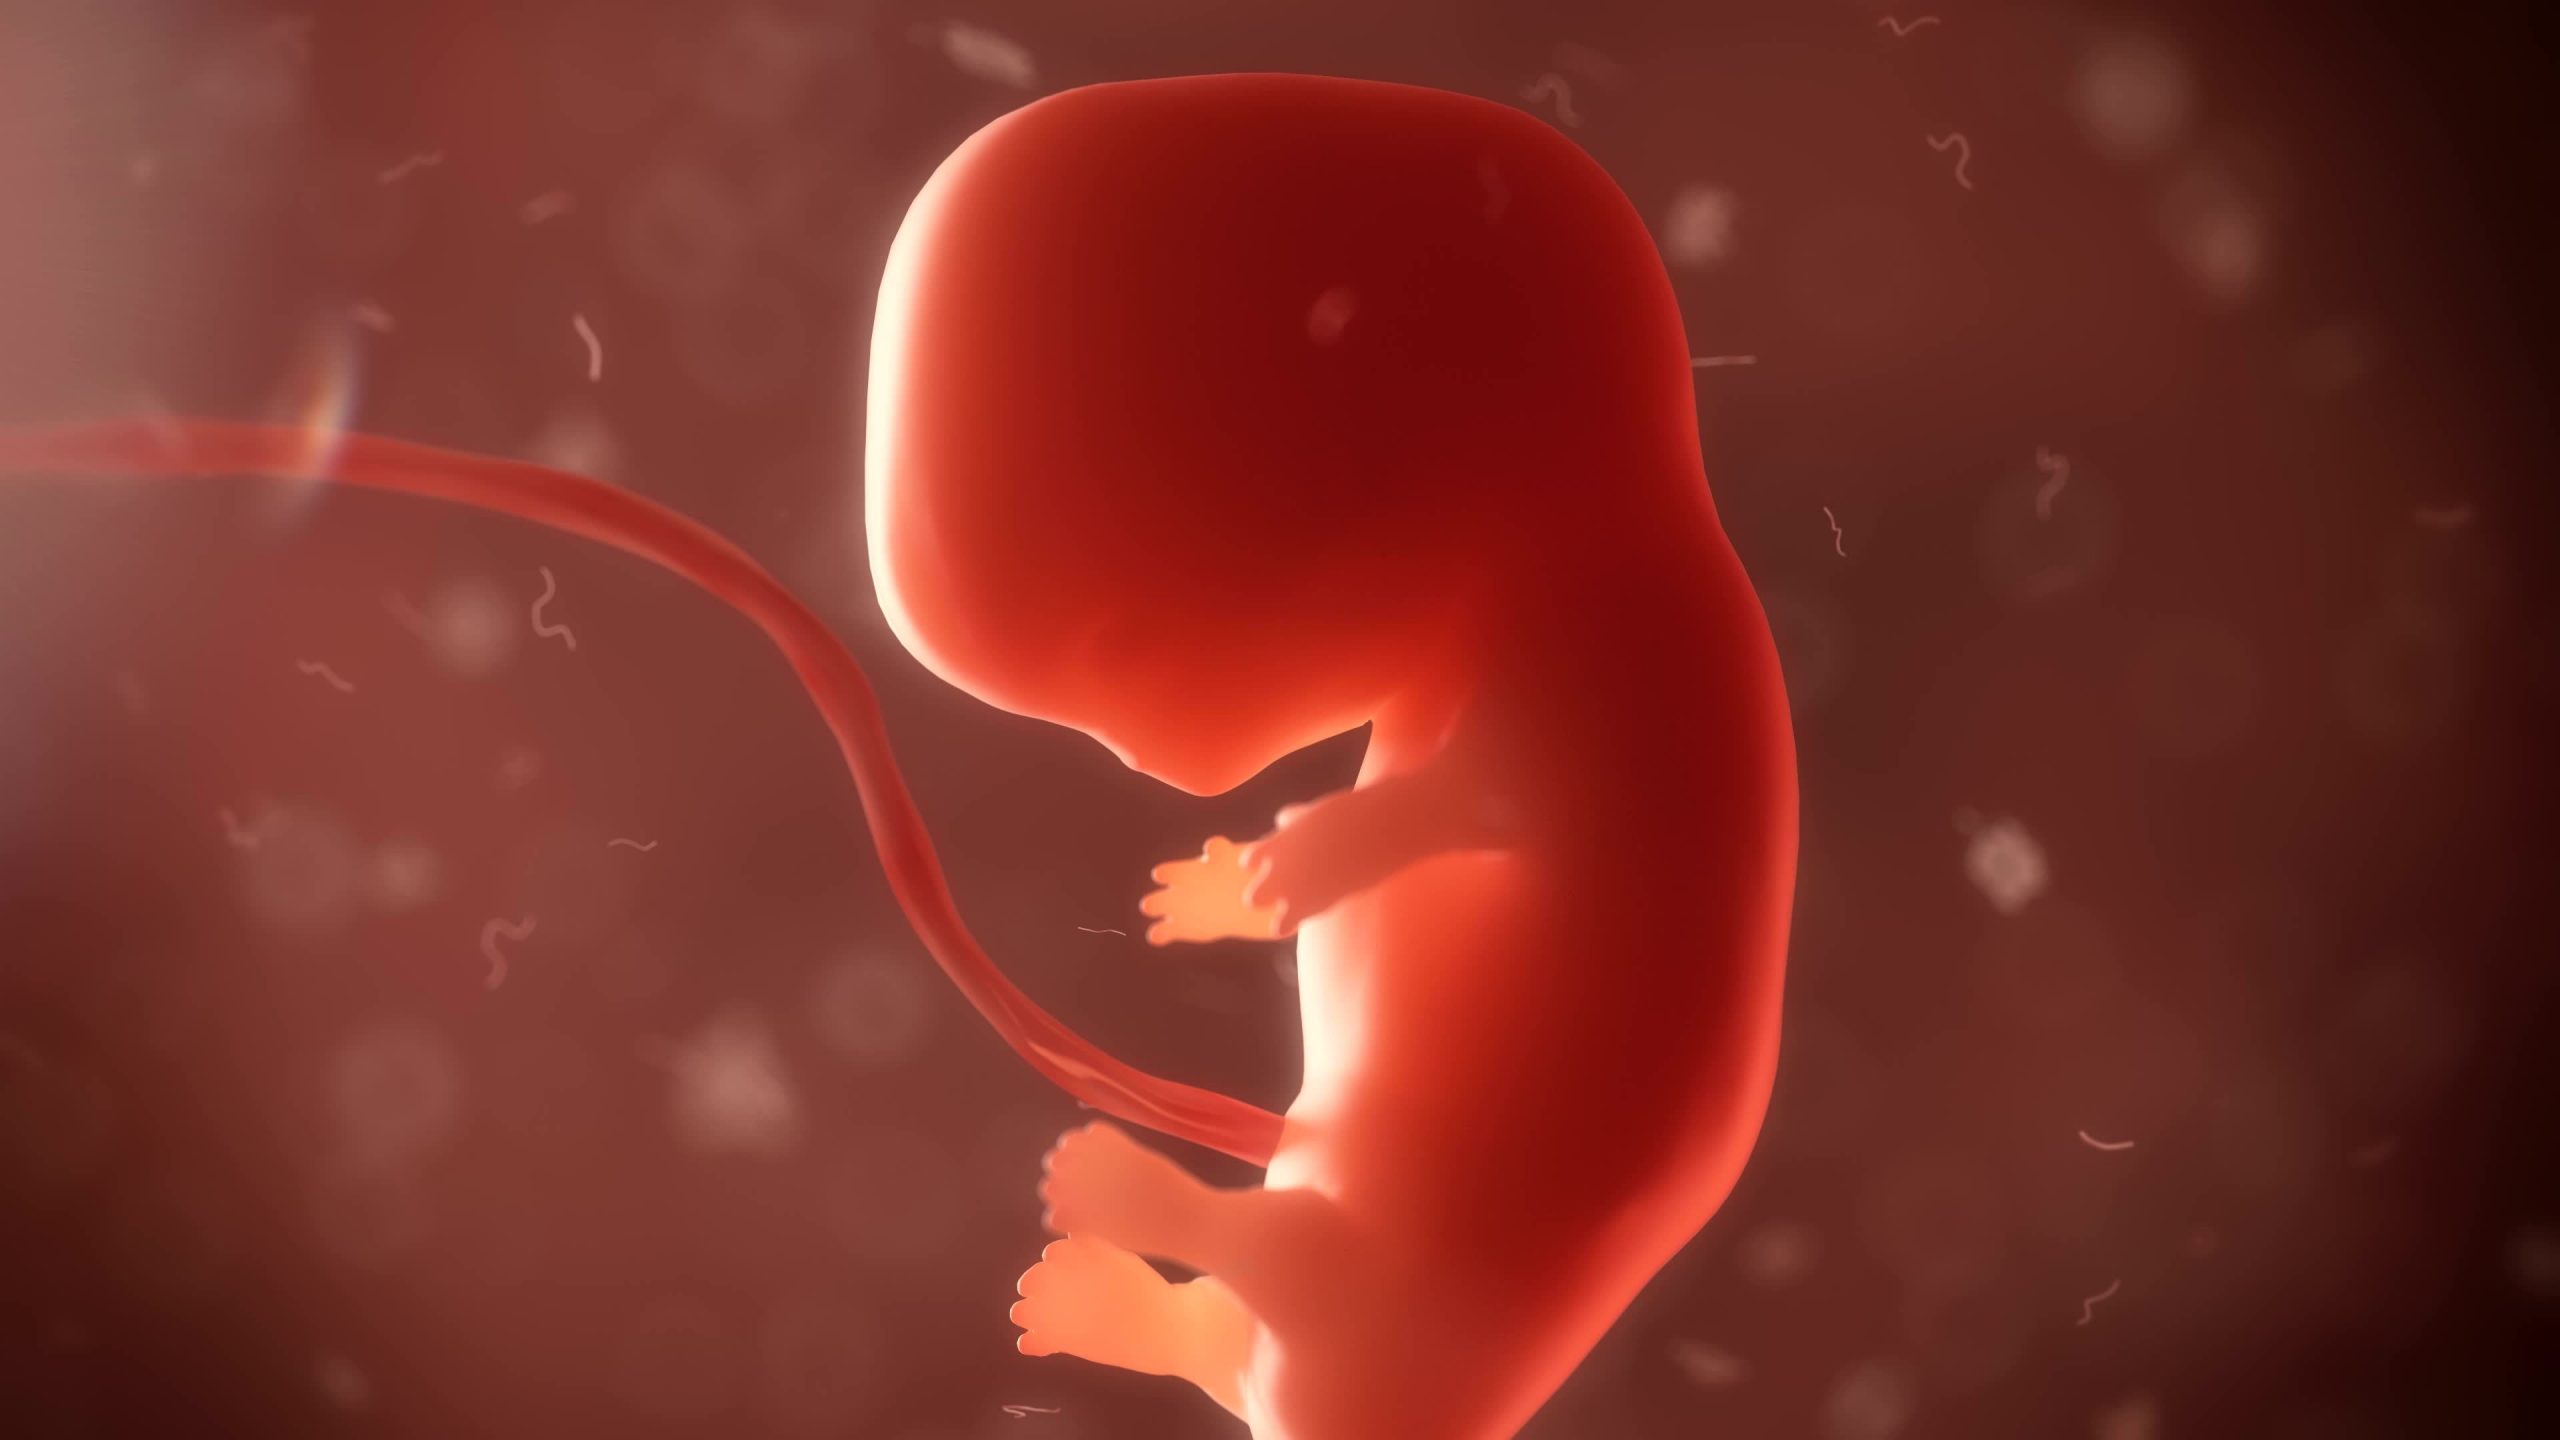 ВОЗ призвала женщин беременеть с помощью ЭКО и разработала правила для размножения